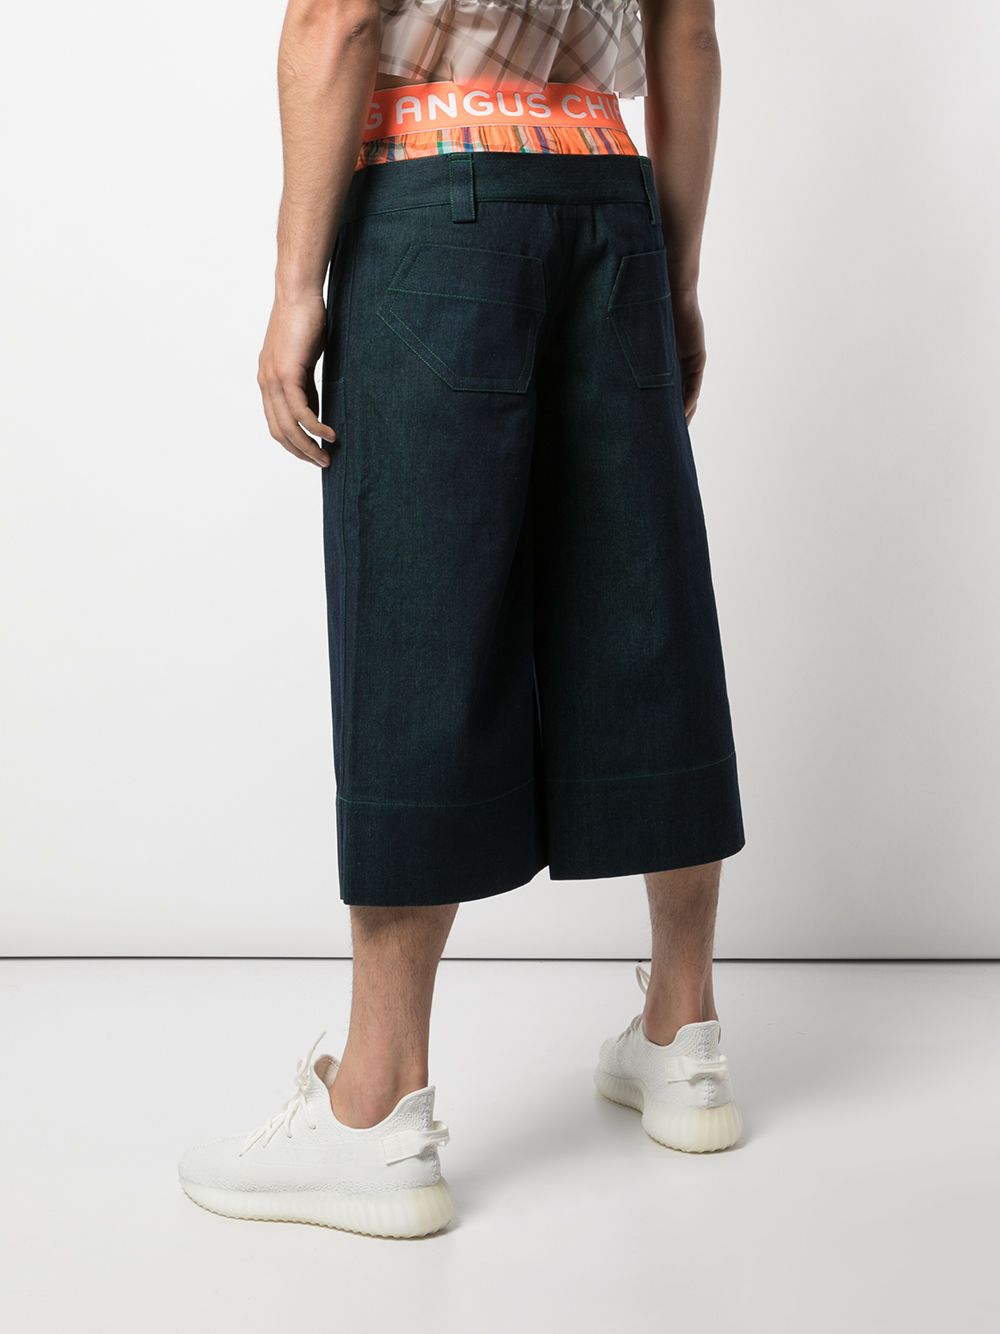 фото Angus Chiang укороченные джинсы с контрастной вставкой на поясе